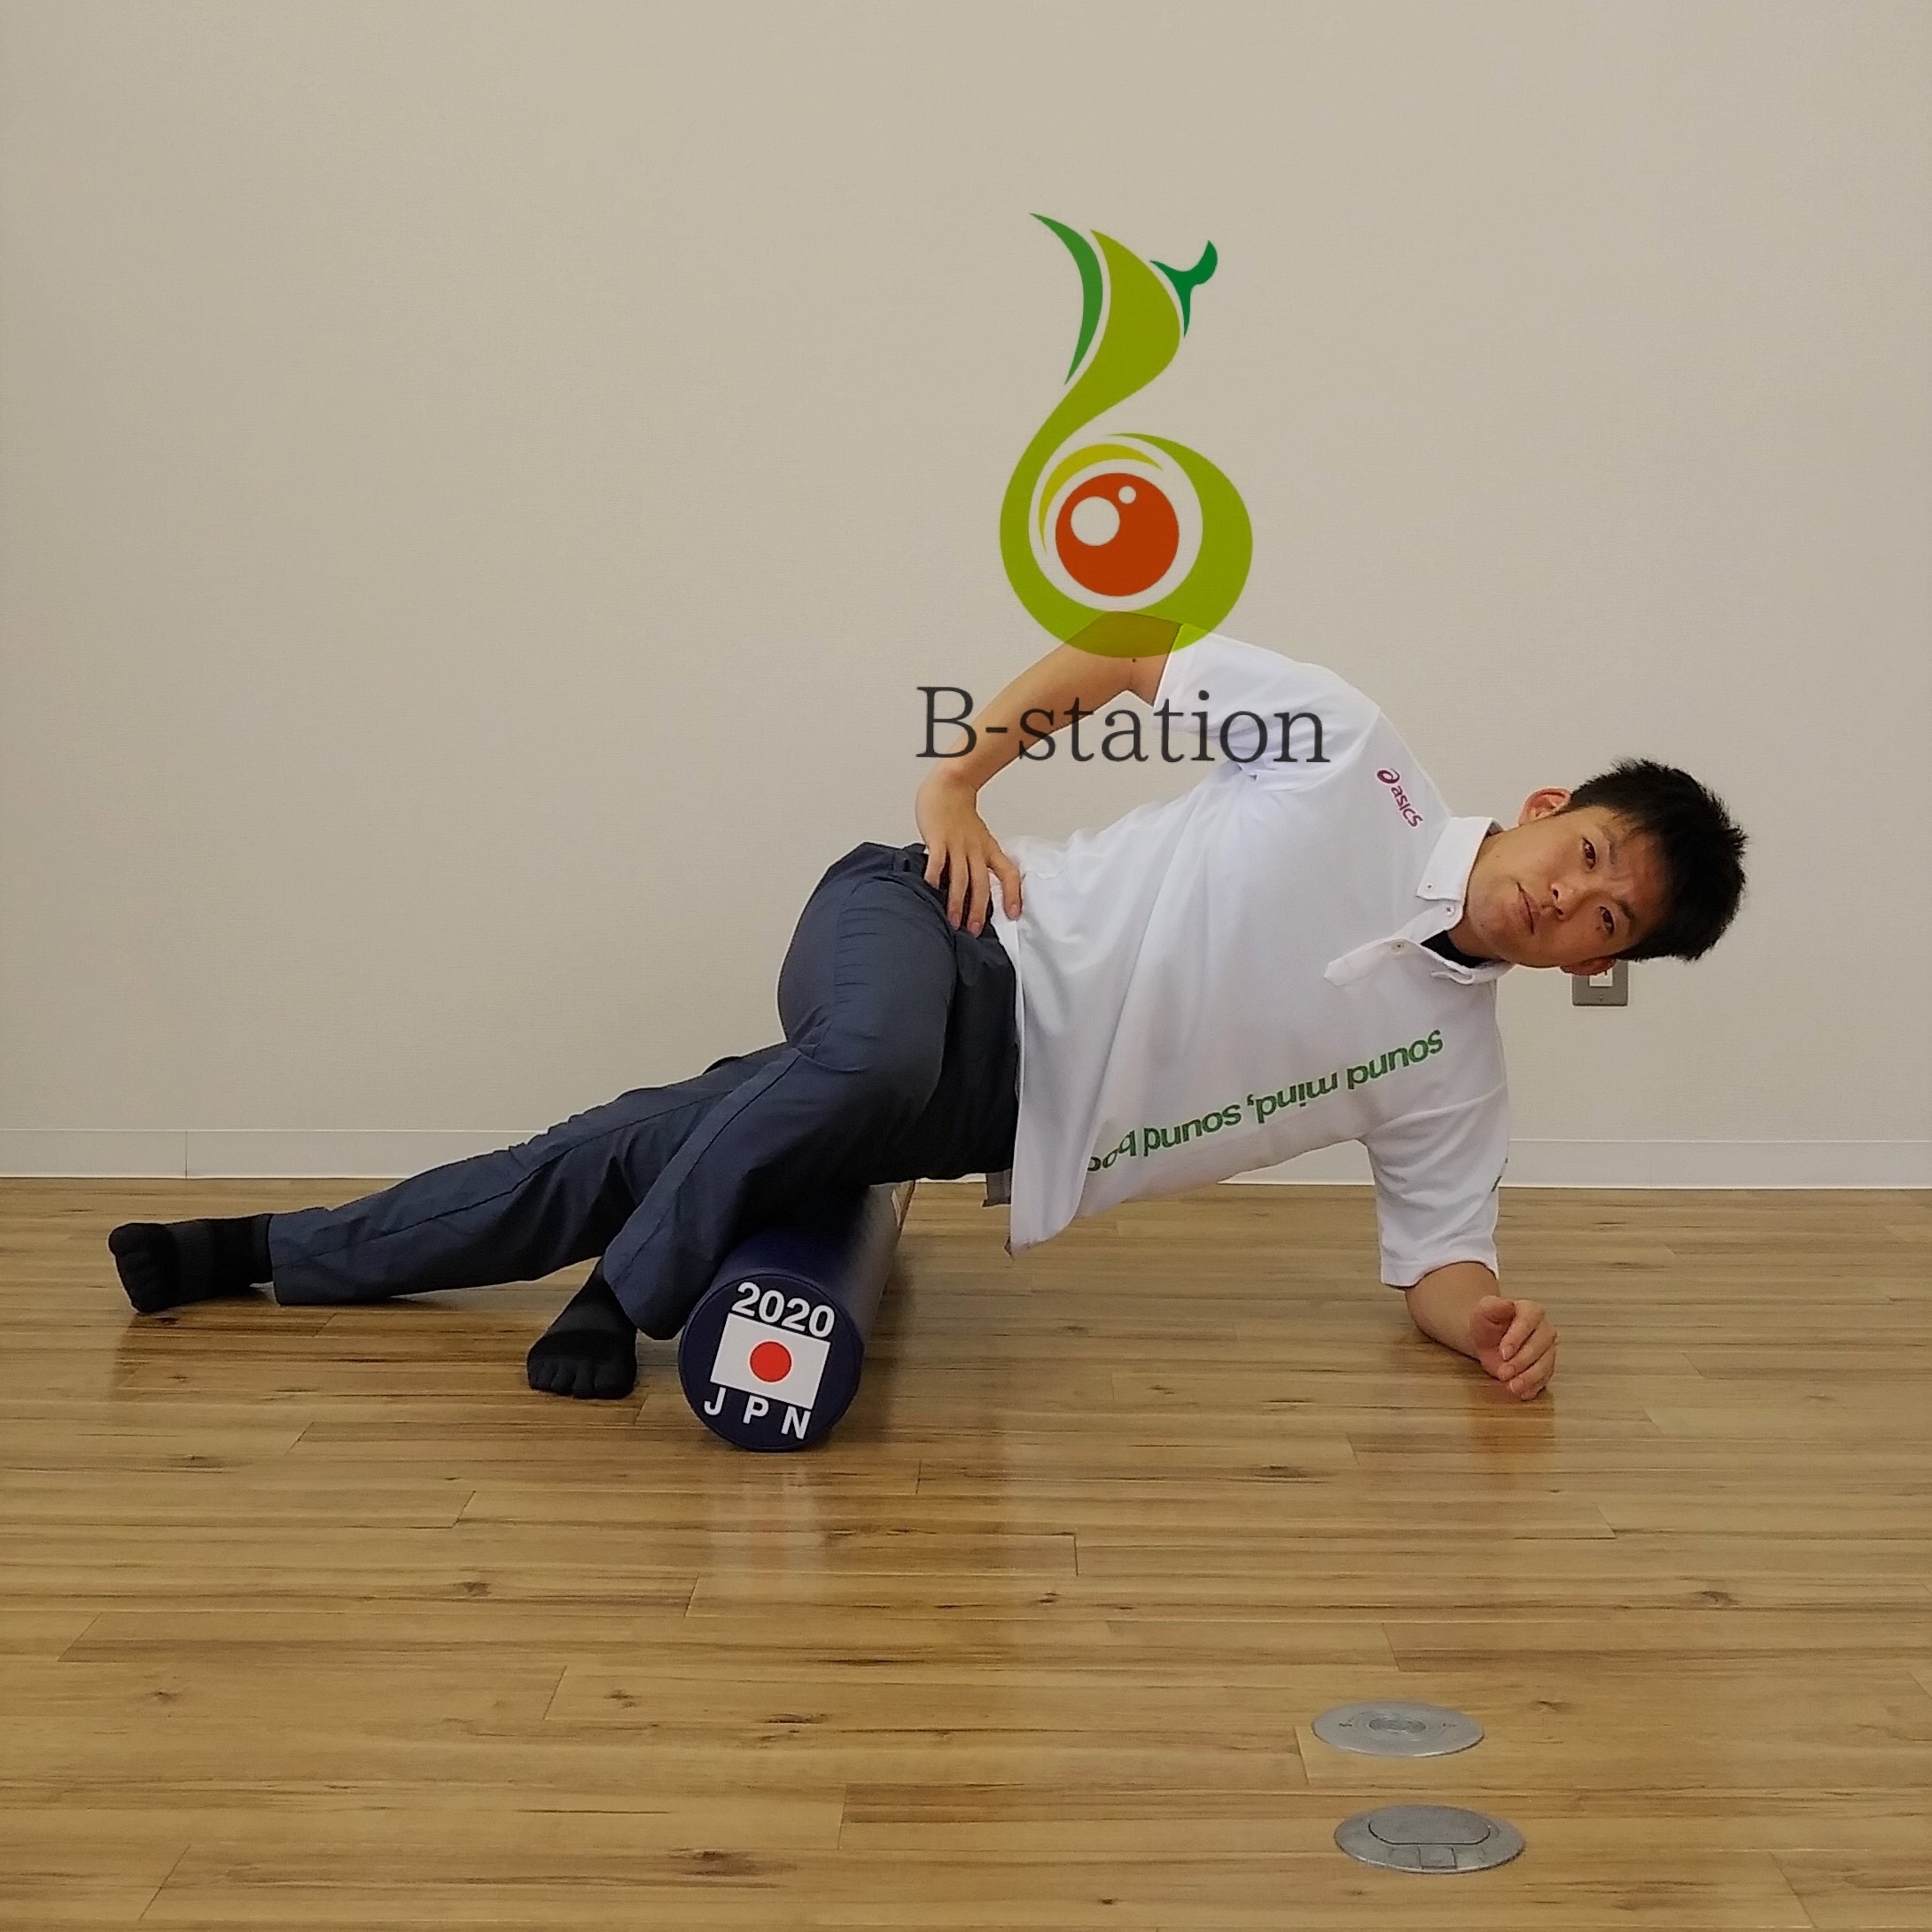 ランナー向けex 腸脛靭帯 外もも をゆるめる 姿勢改善 引き締めるパーソナルトレーニング 大阪 南森町 B Station